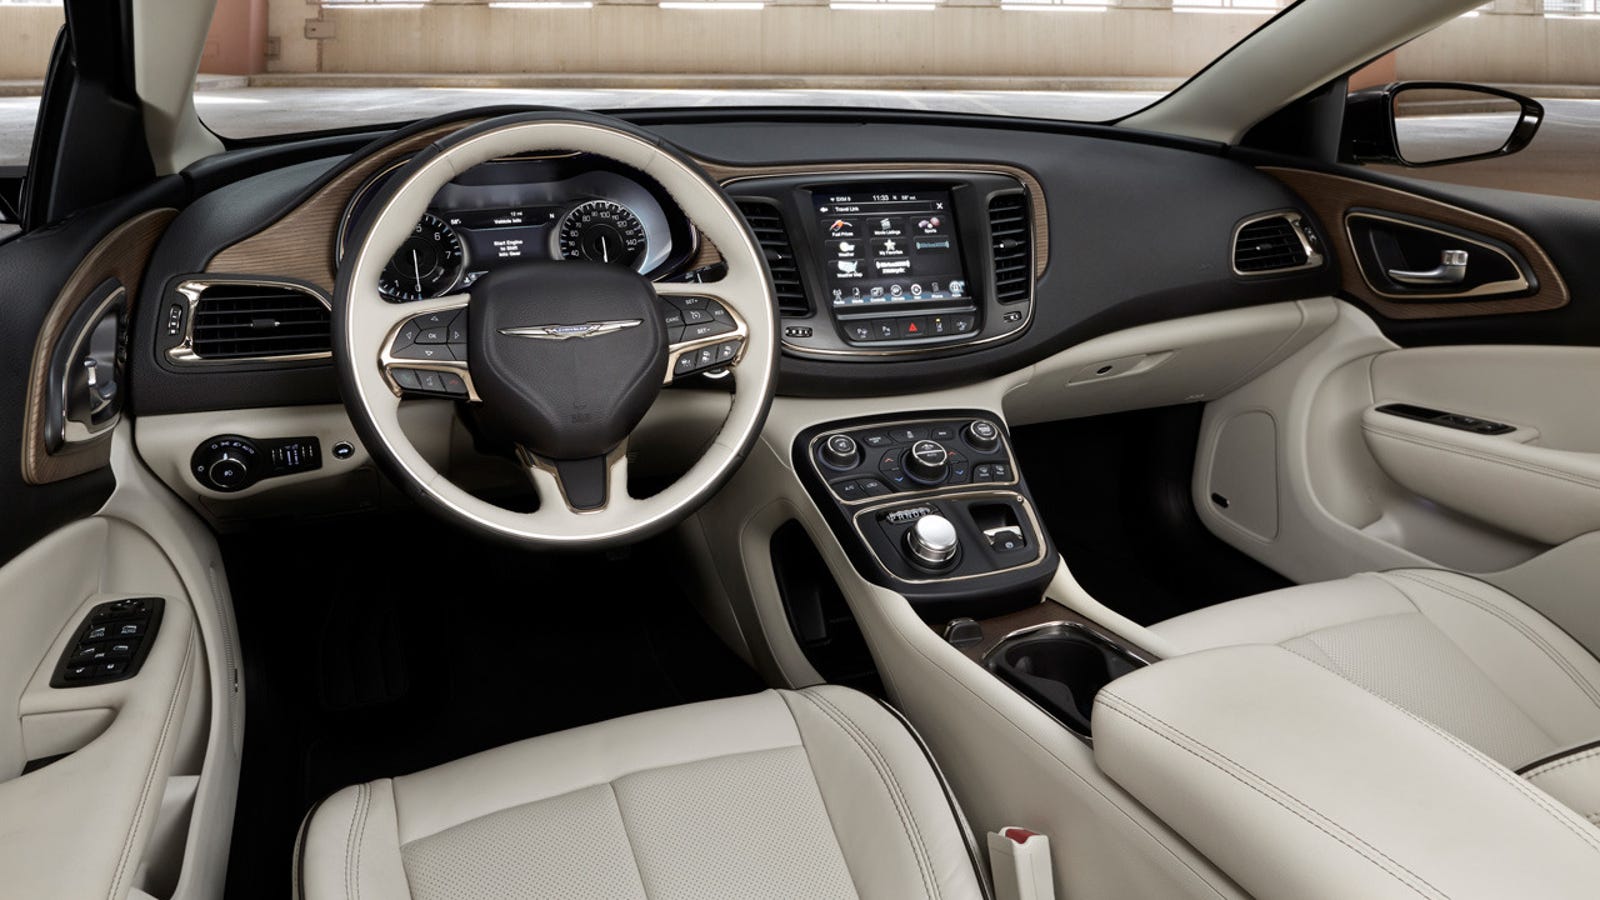 I M Liking The 2015 Chrysler 200 S Interior